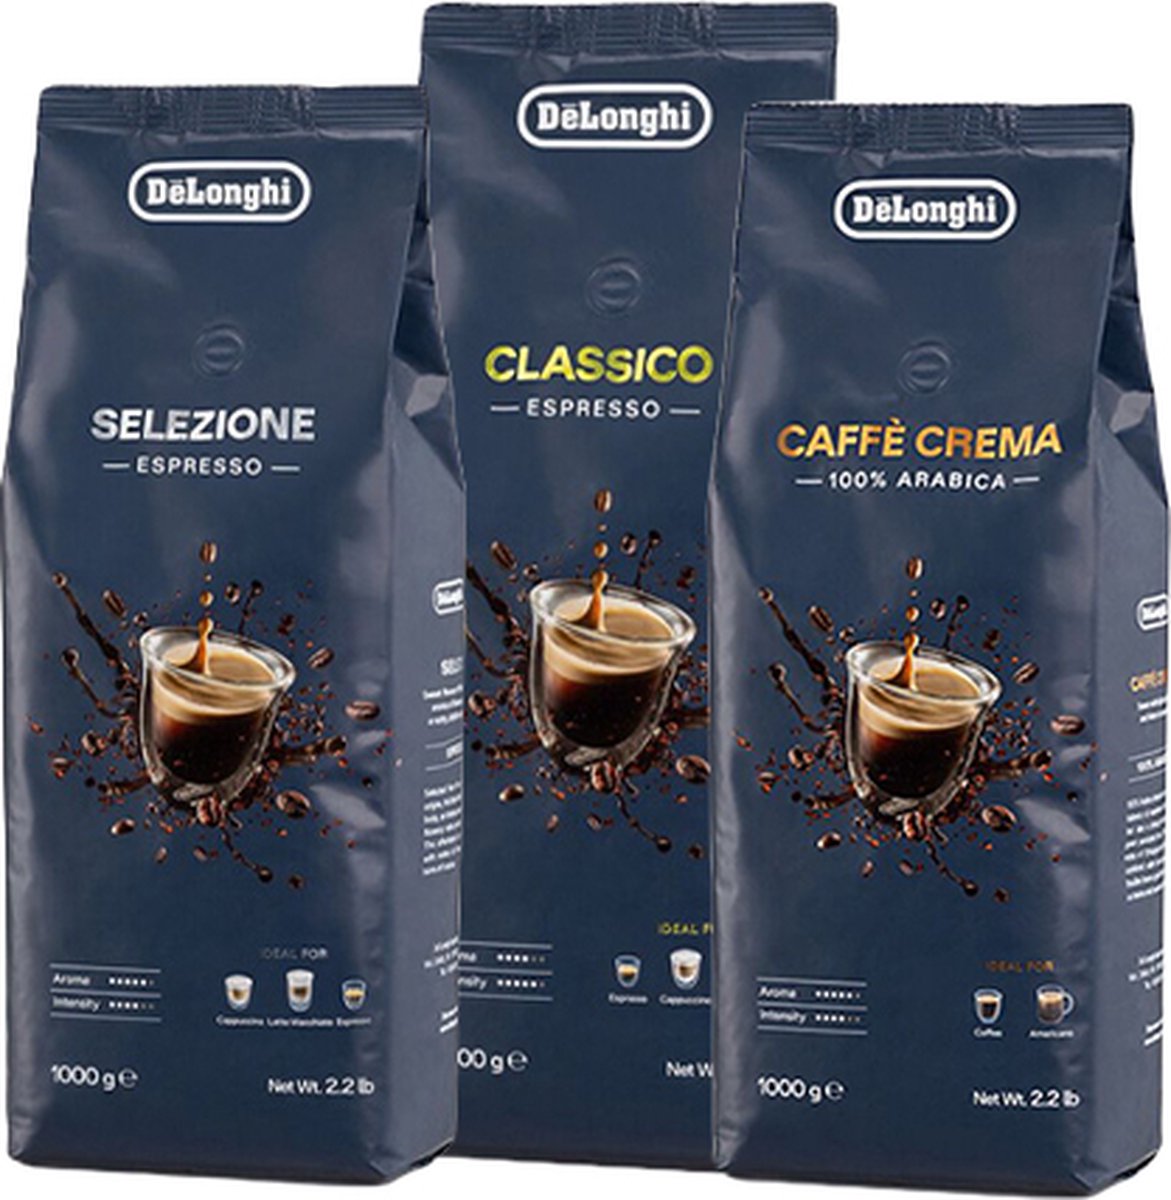 DeLonghi - Proefpakket Koffie Bonen - 3x 1kg